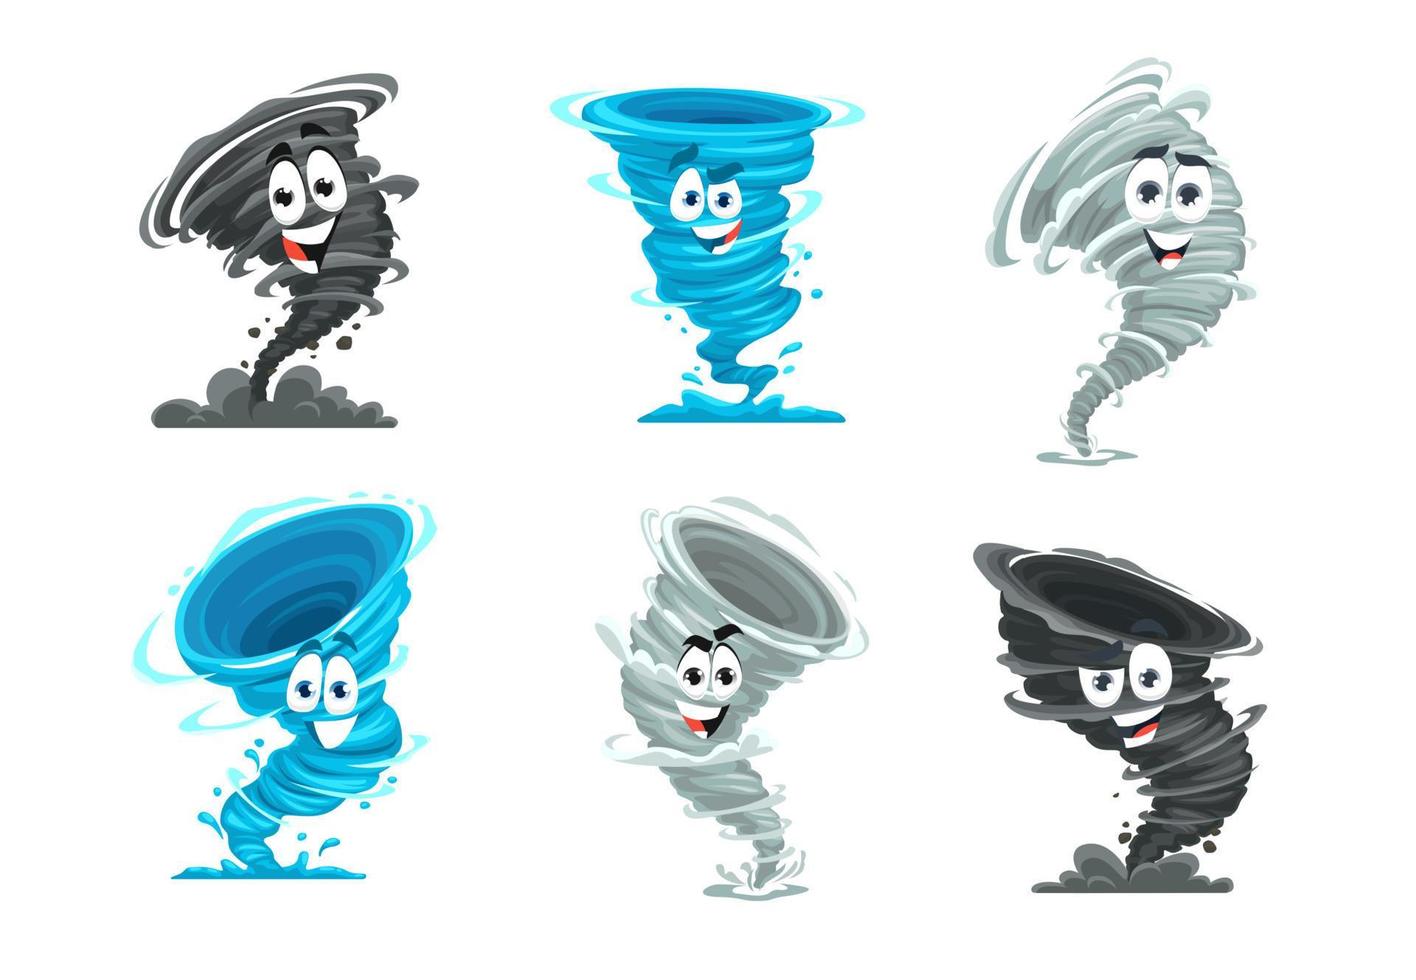 Cartoon tornado mascot, storm or cyclone character vector